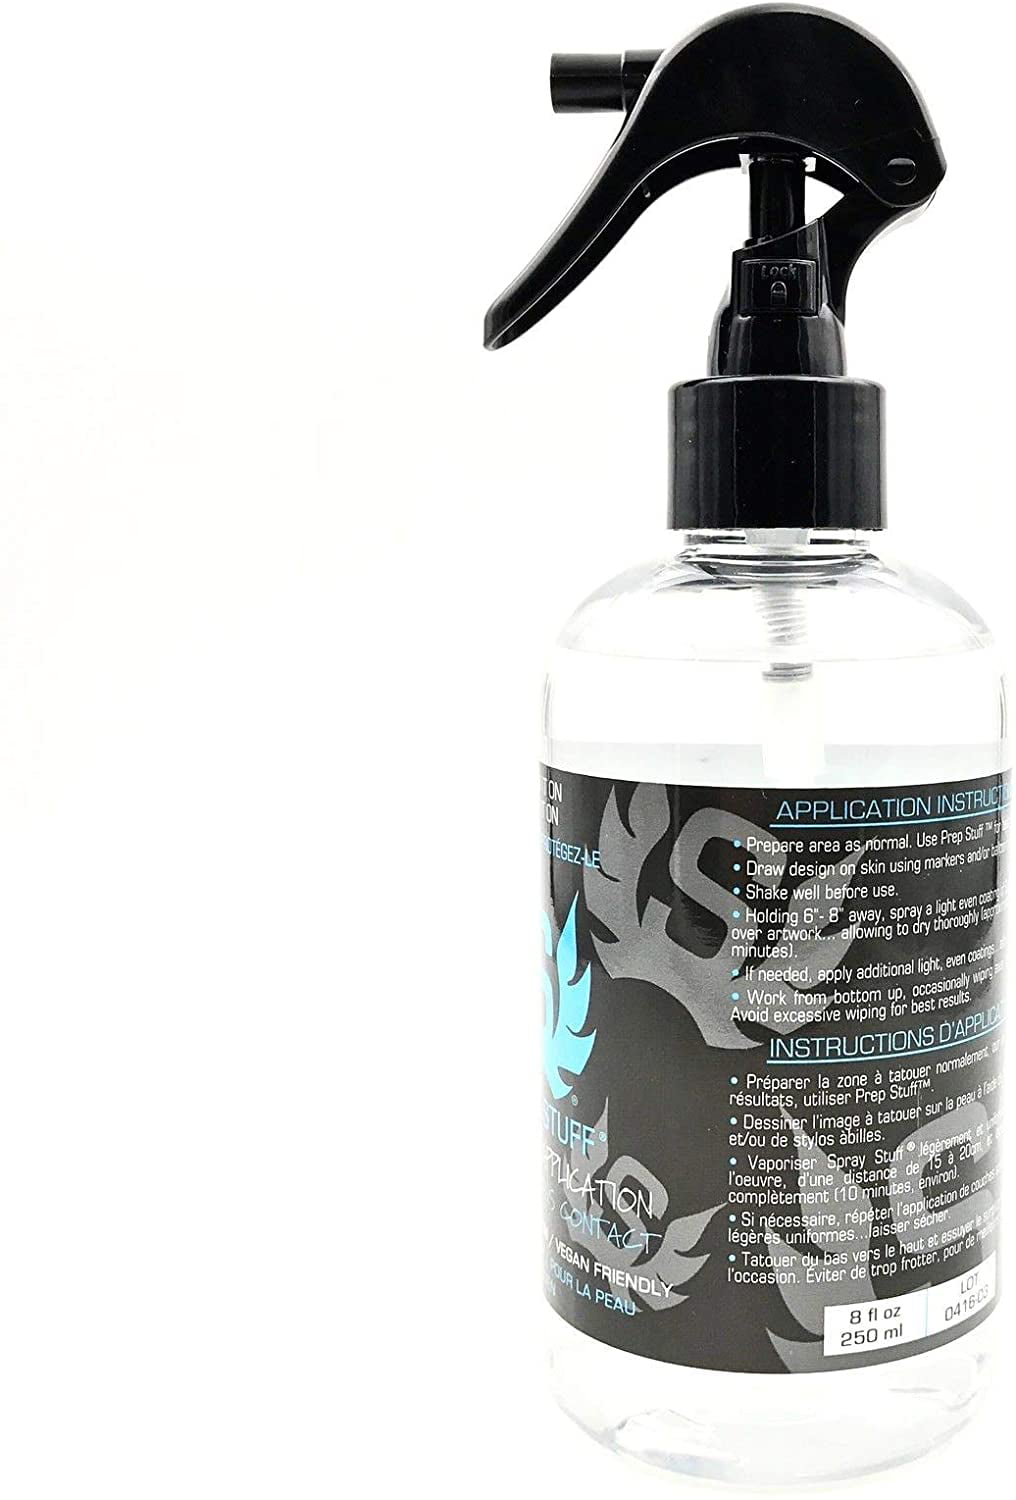 Stencil Stuff Spray Stuff Spray Stuff Tattoo Drawing Protection Formula  [Spray_Stuff], $25.00, Joker Tattoo Supply